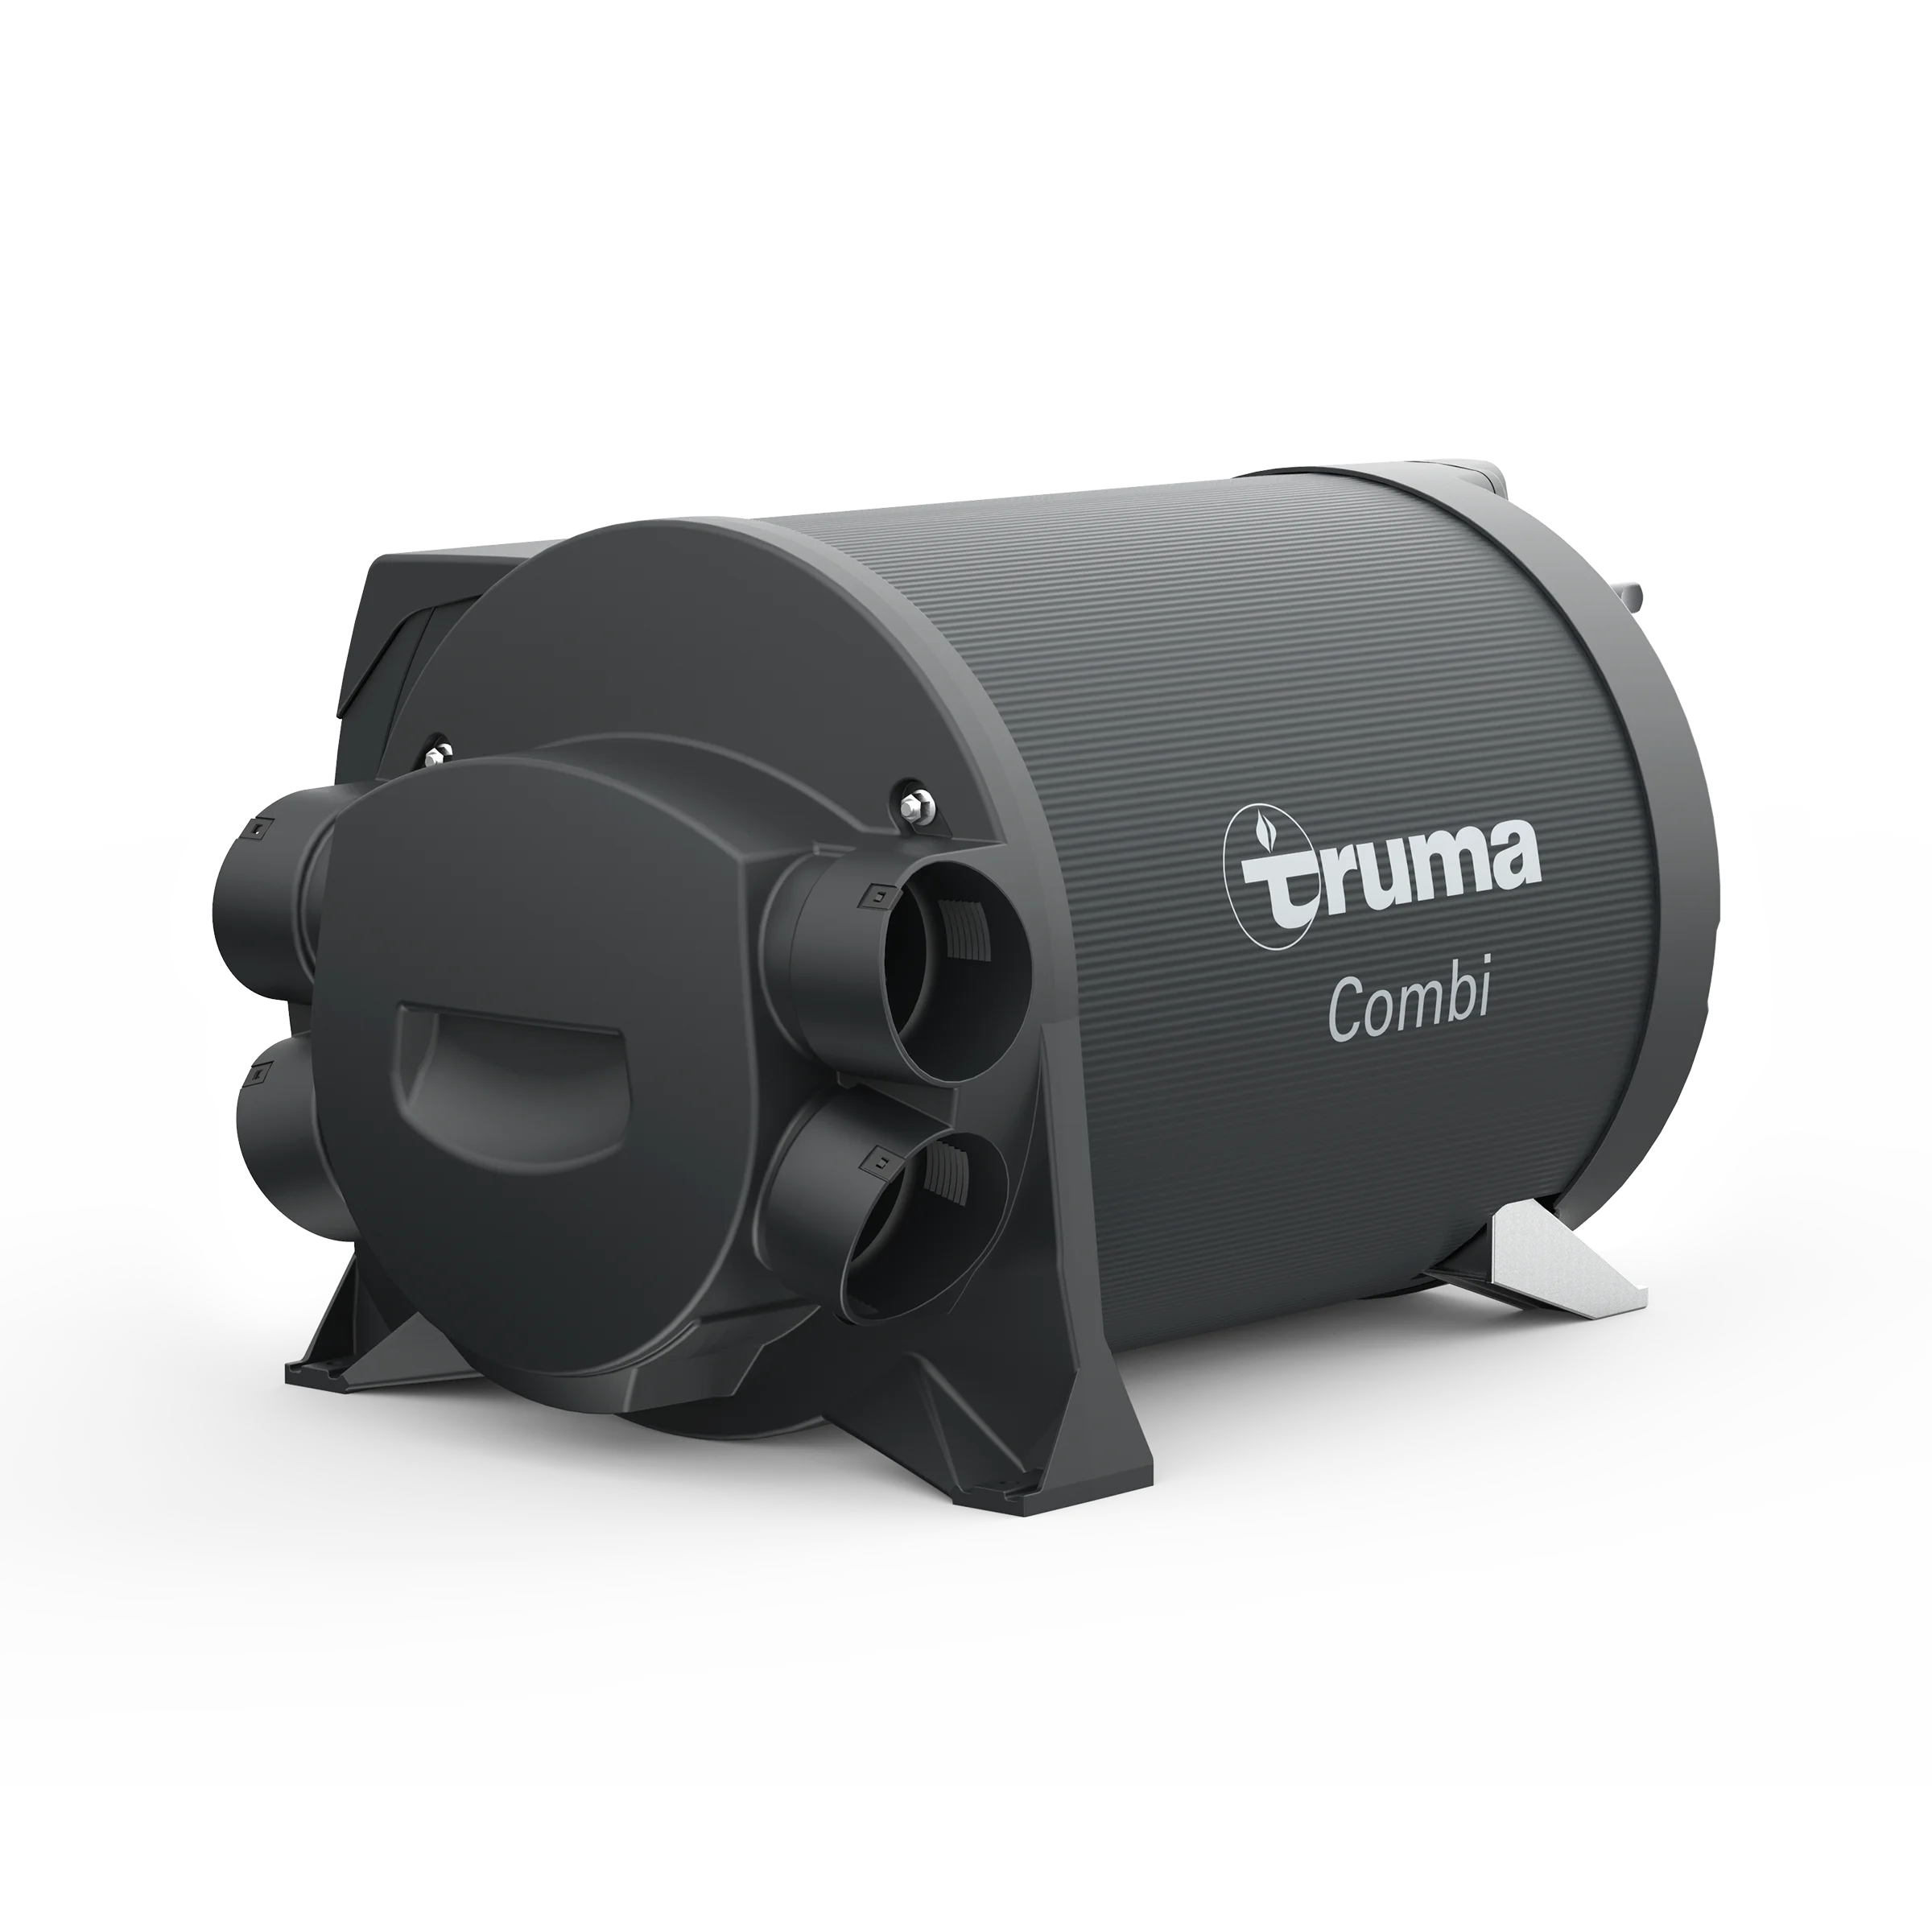 Truma Combi 4 E  the gas hybrid heater for motor homes